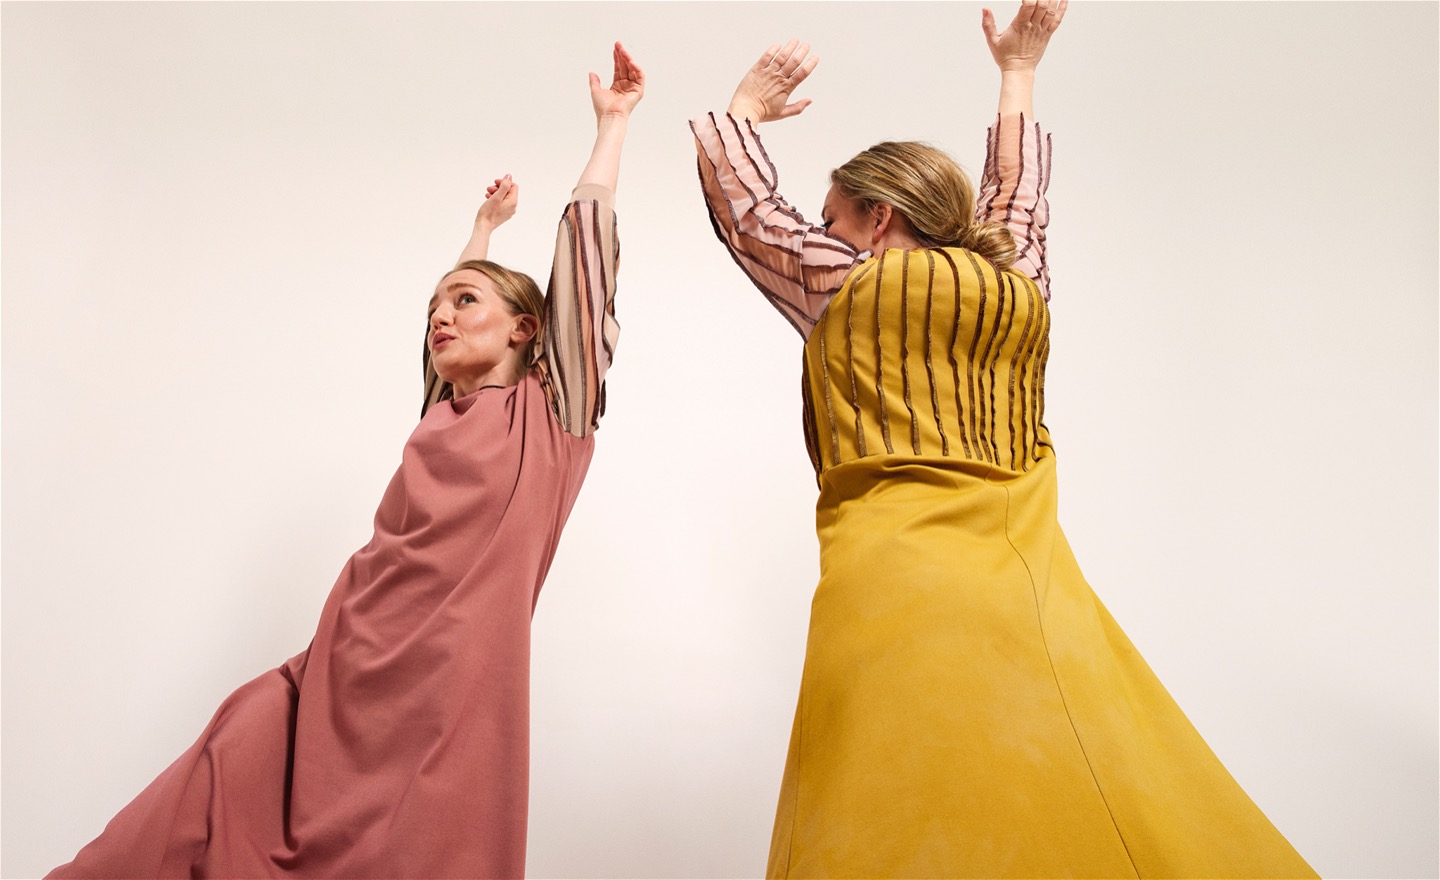 två dansare i gul och rosa klänning. bild tagen underifrån